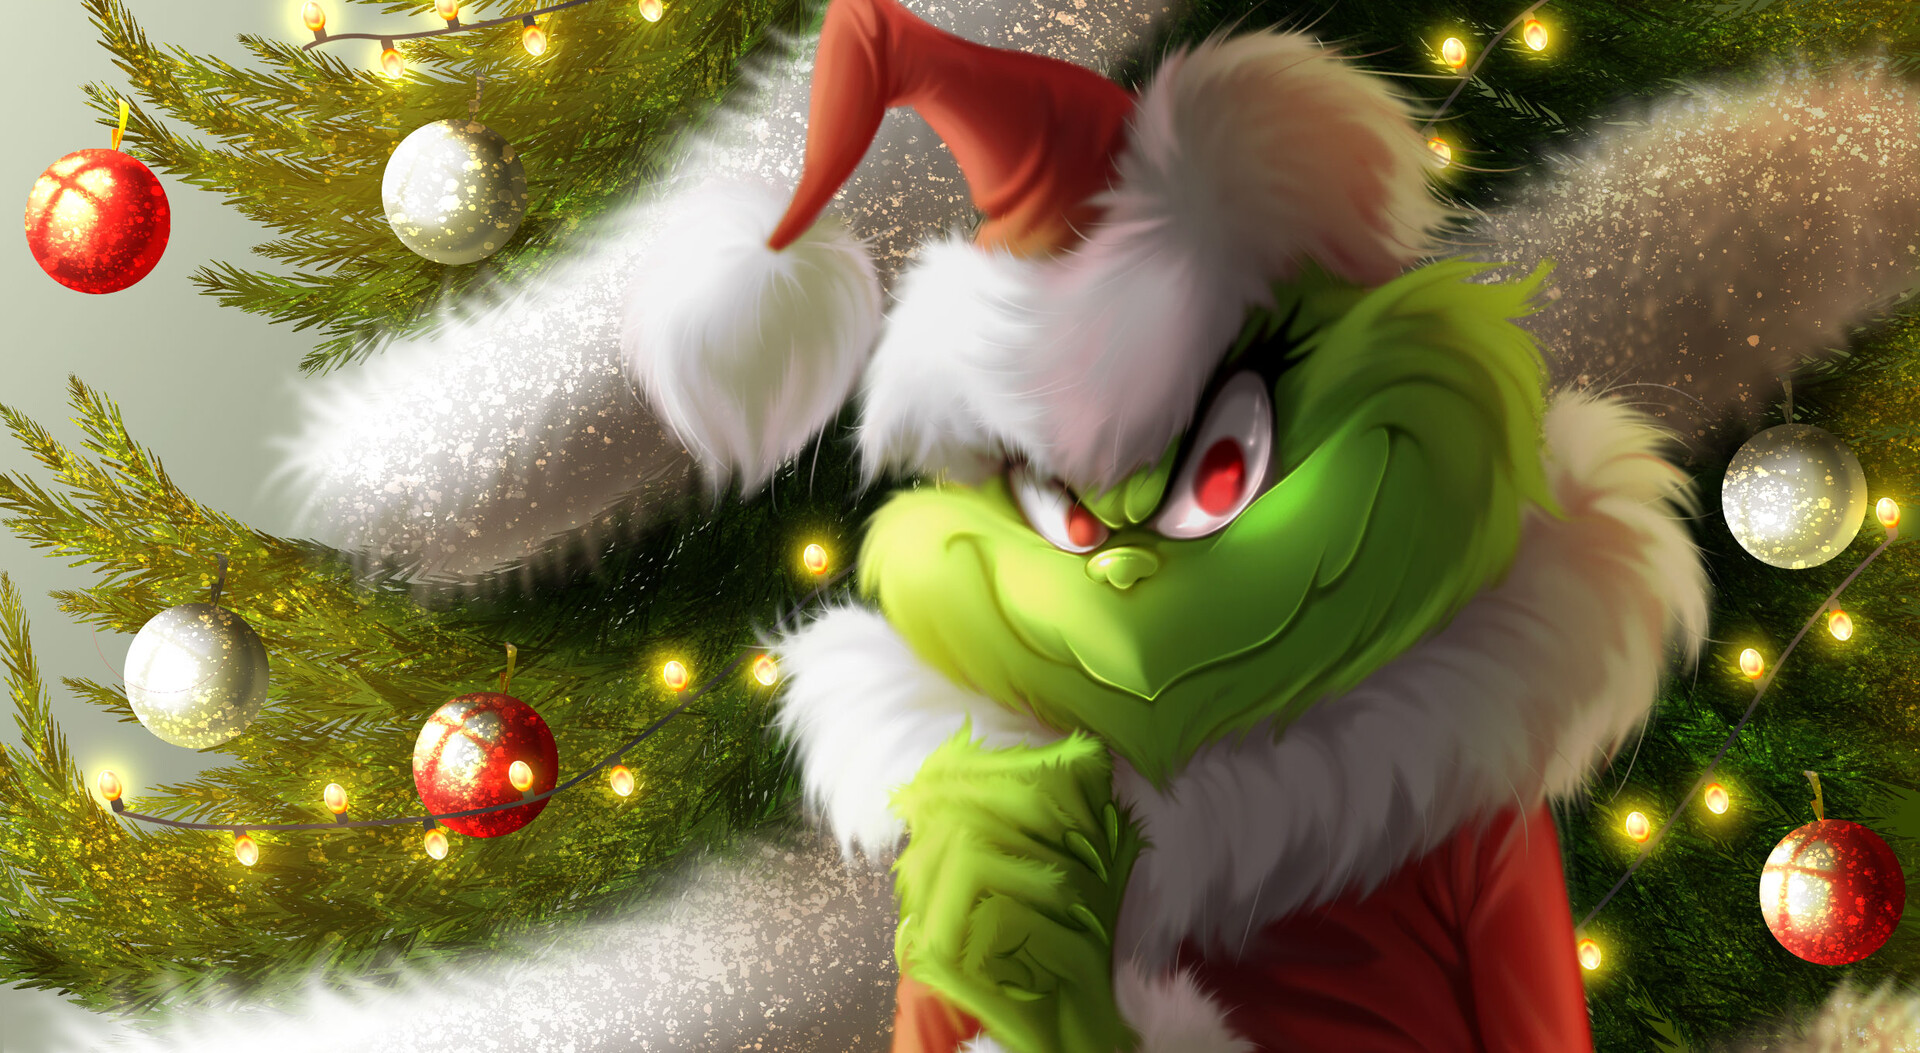 Nếu bạn là fan của bộ truyện tranh Grinch, đừng bỏ lỡ cơ hội khám phá bộ sưu tập fanart How did Grinch steal Christmas độc đáo mang đến cho bạn những giây phút thư giãn, tràn đầy sự sáng tạo và nghệ thuật!